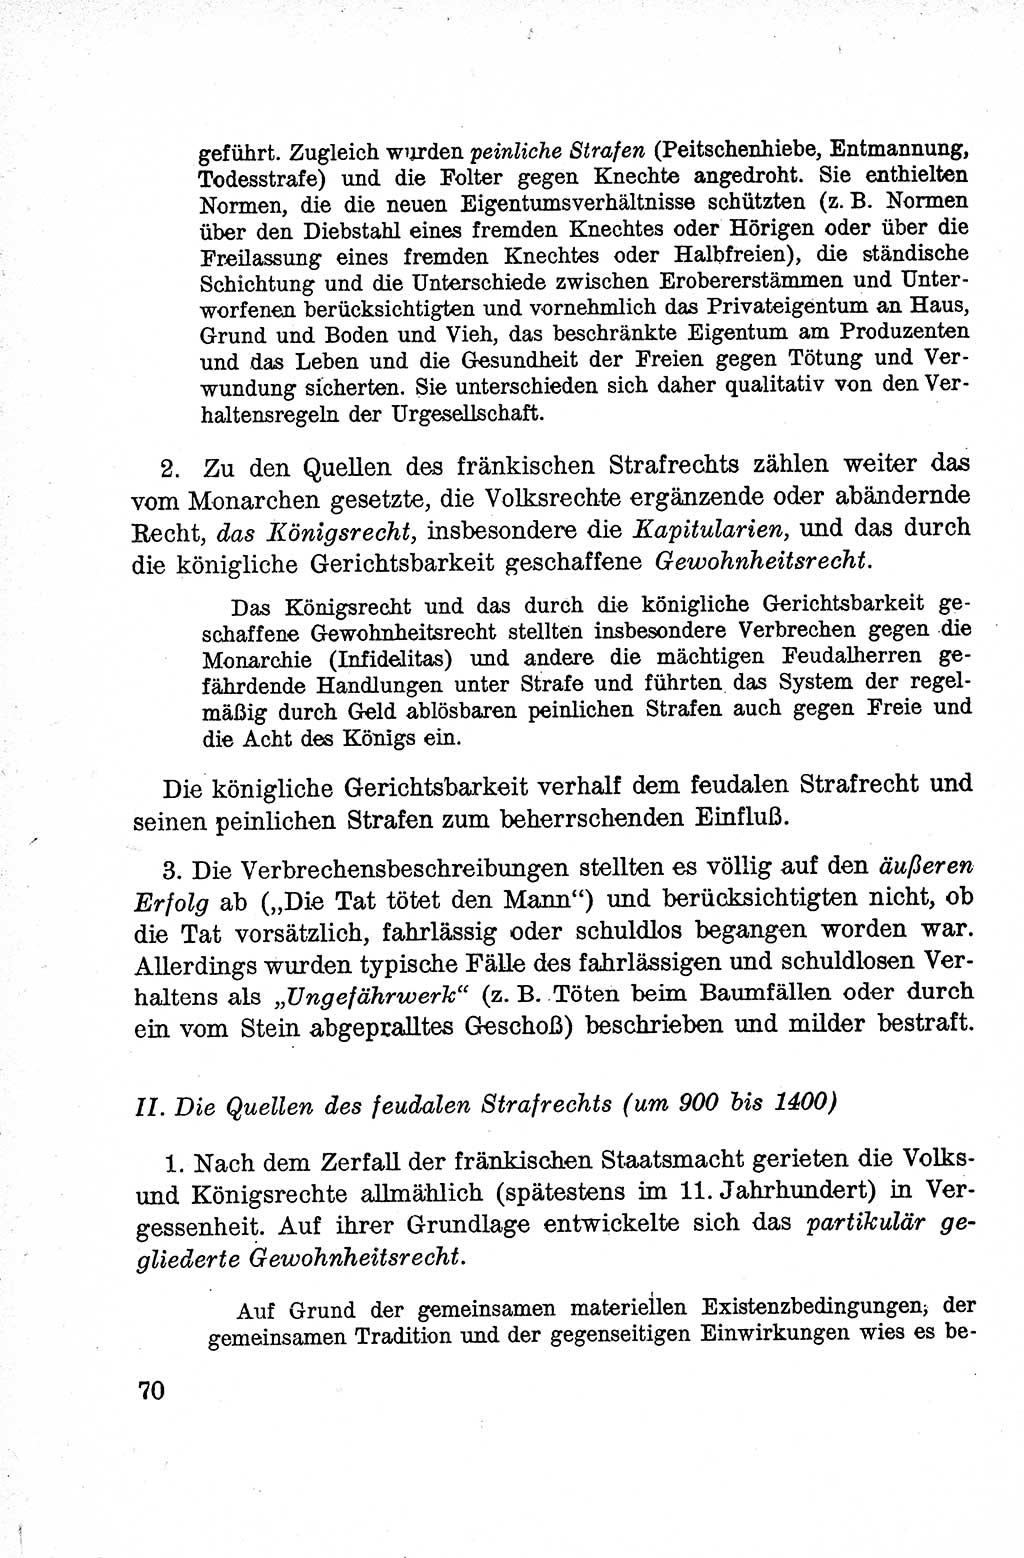 Lehrbuch des Strafrechts der Deutschen Demokratischen Republik (DDR), Allgemeiner Teil 1959, Seite 70 (Lb. Strafr. DDR AT 1959, S. 70)